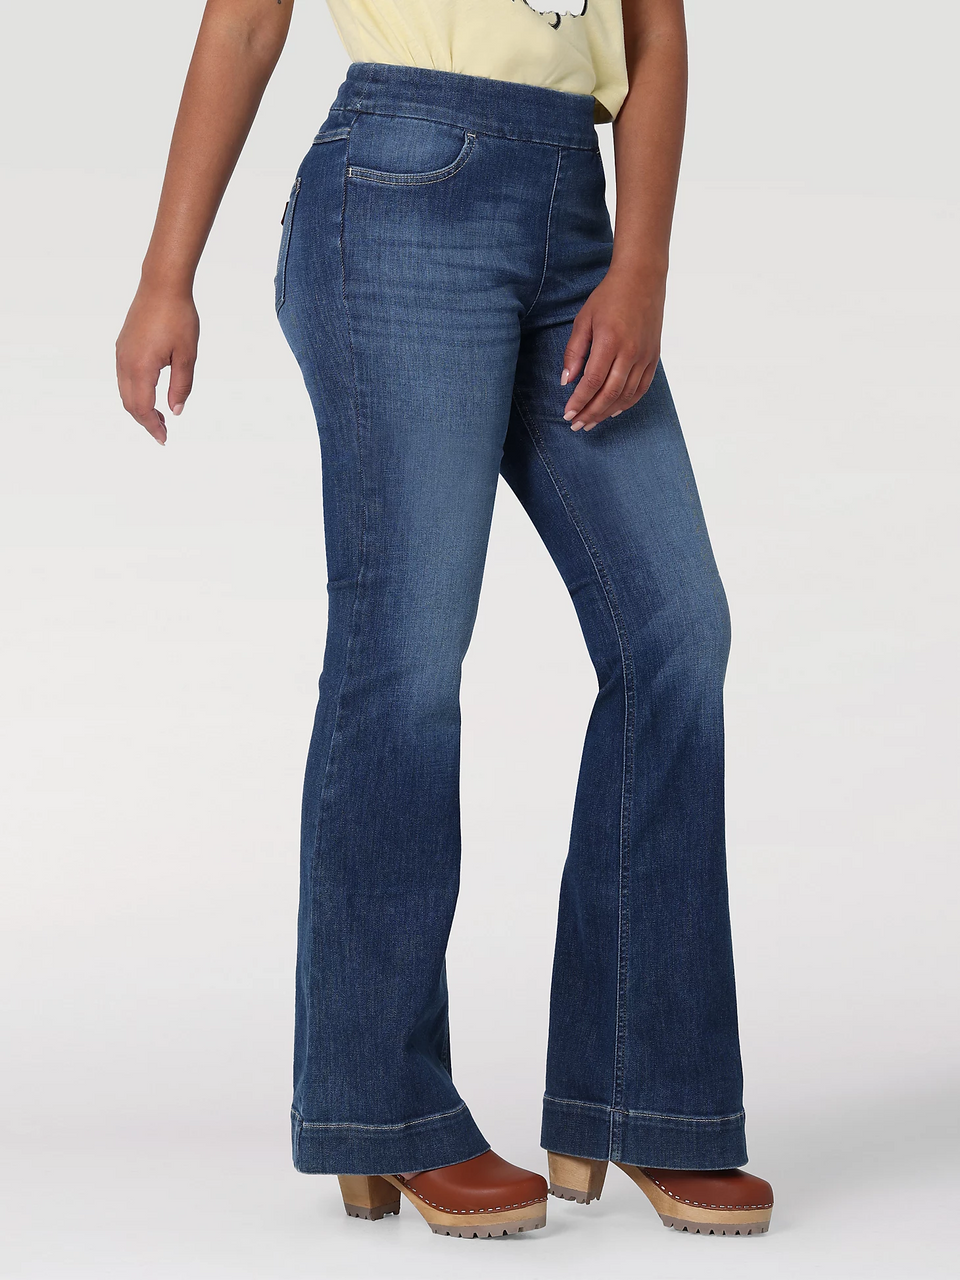 Women's Legendary Trouser Jean in Elevated Retro Blue